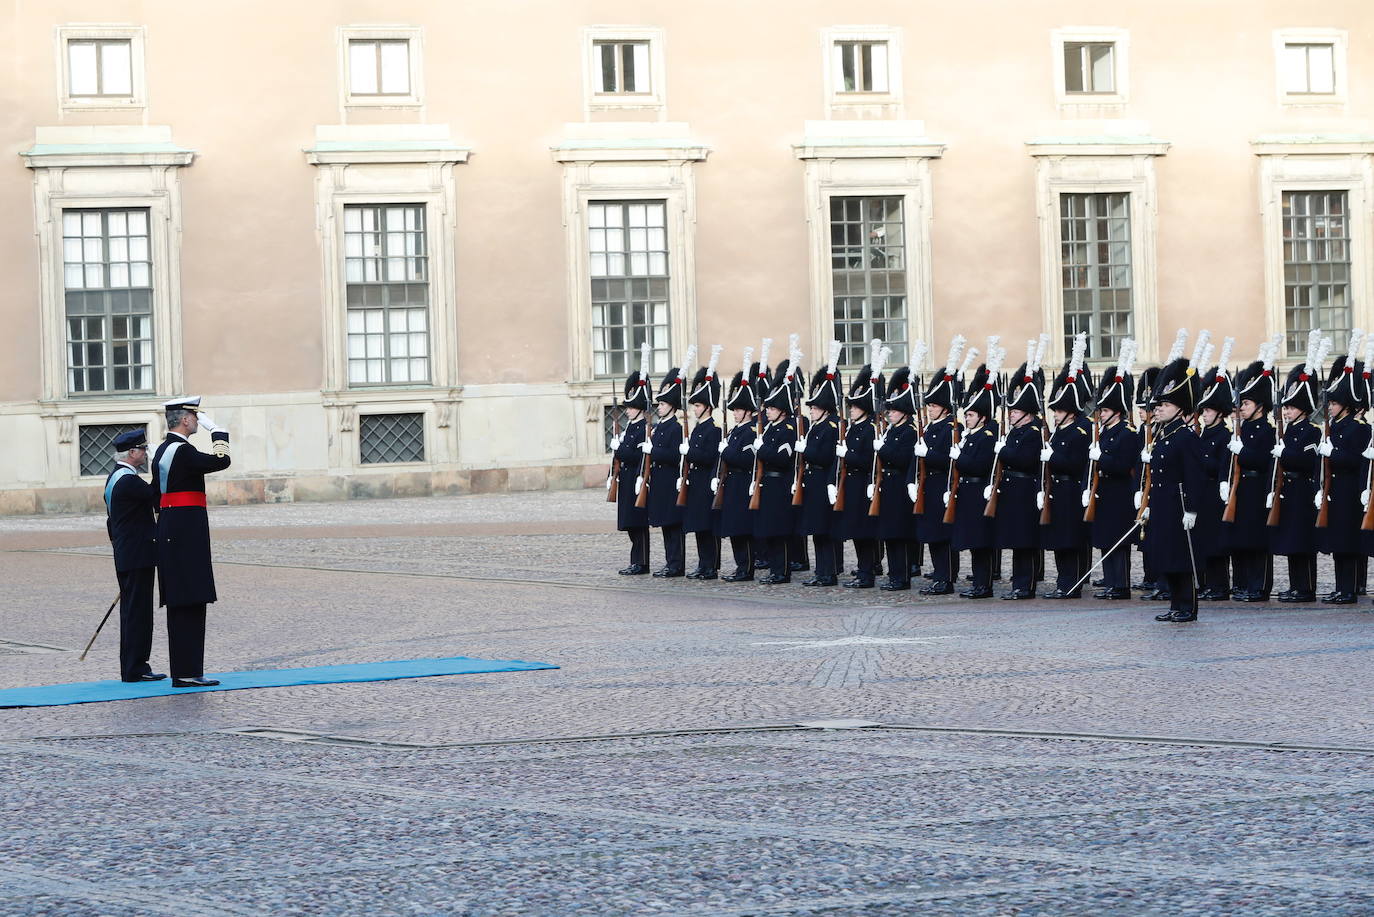 Felipe VI pasó revista al batallón de honores de la Guardia Real sueca junto al rey Carlos XVI Gustavo. 